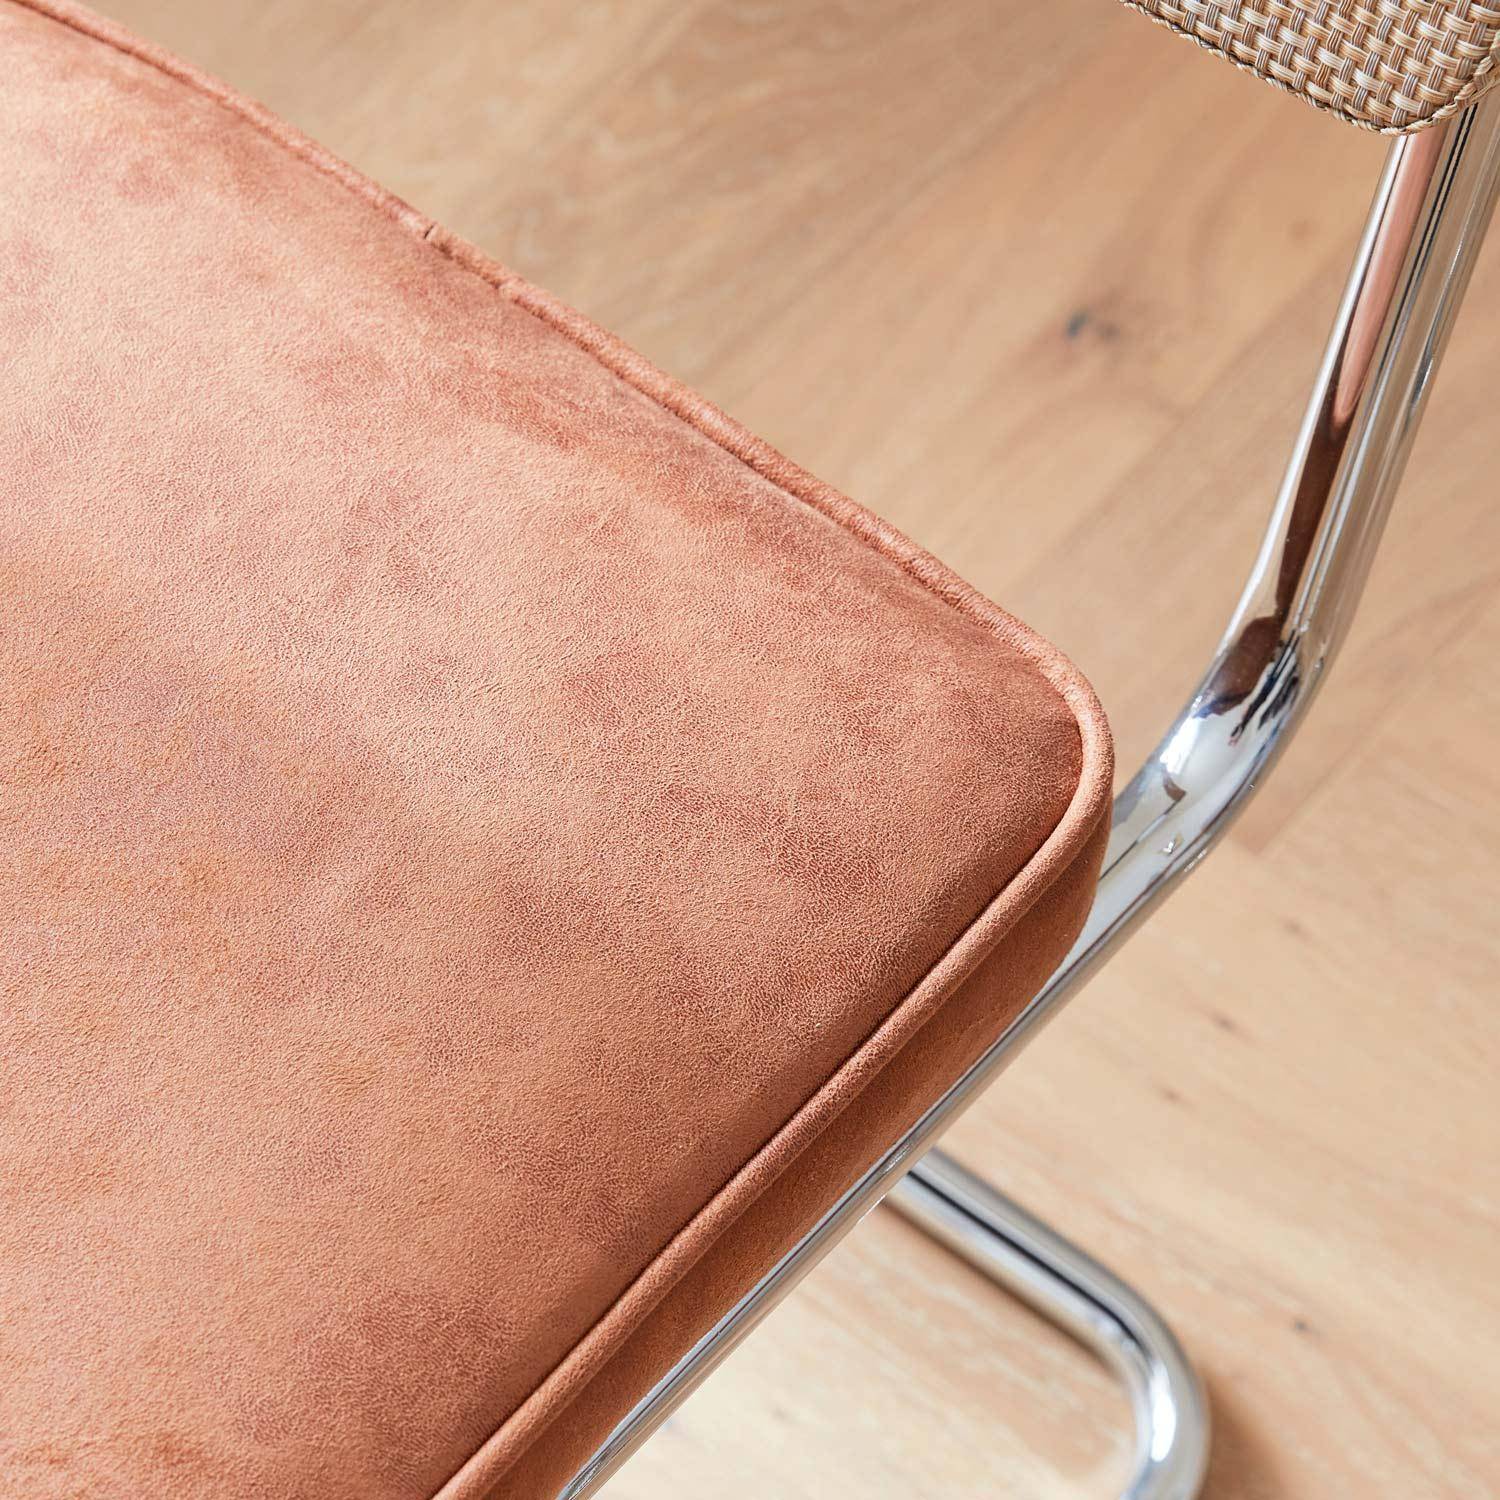 2 sillas cantilever - Maja - tela marrón claro y resina efecto ratán, 46 x 54,5 x 84,5cm   Photo3